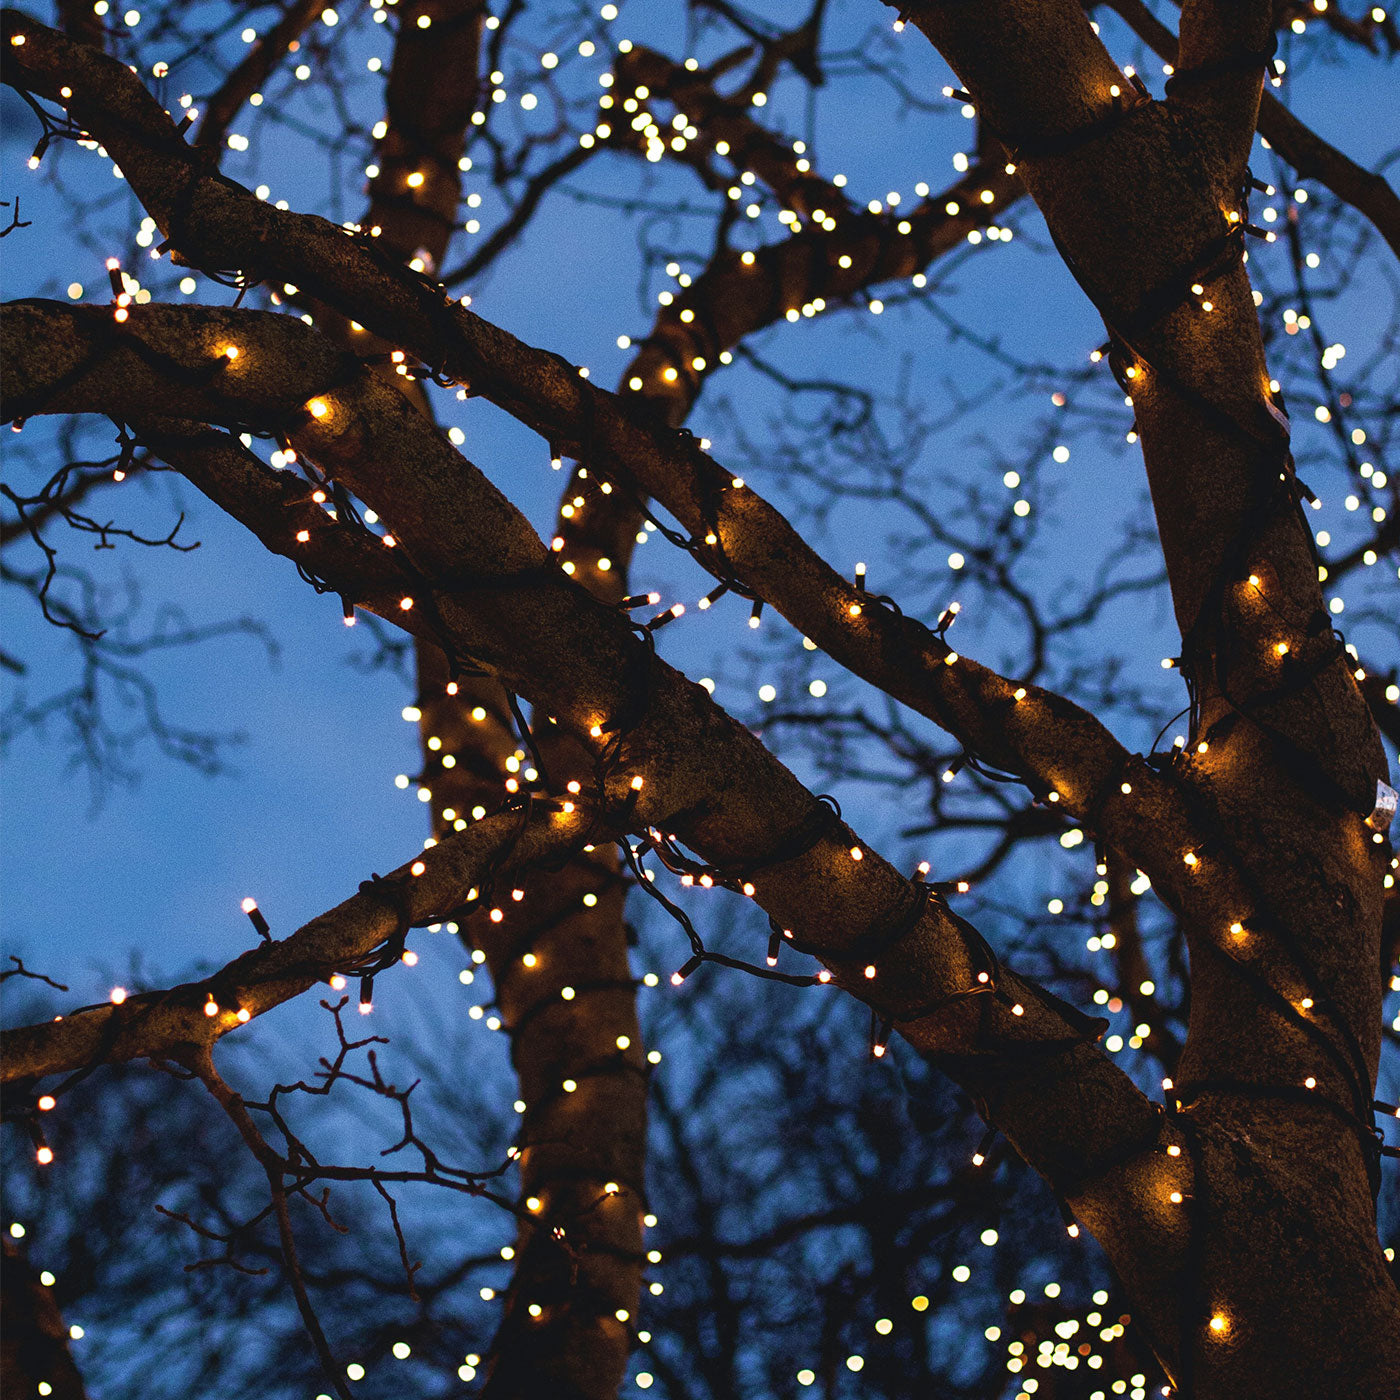 julelys der hænger på et træ og lyser op i mørket